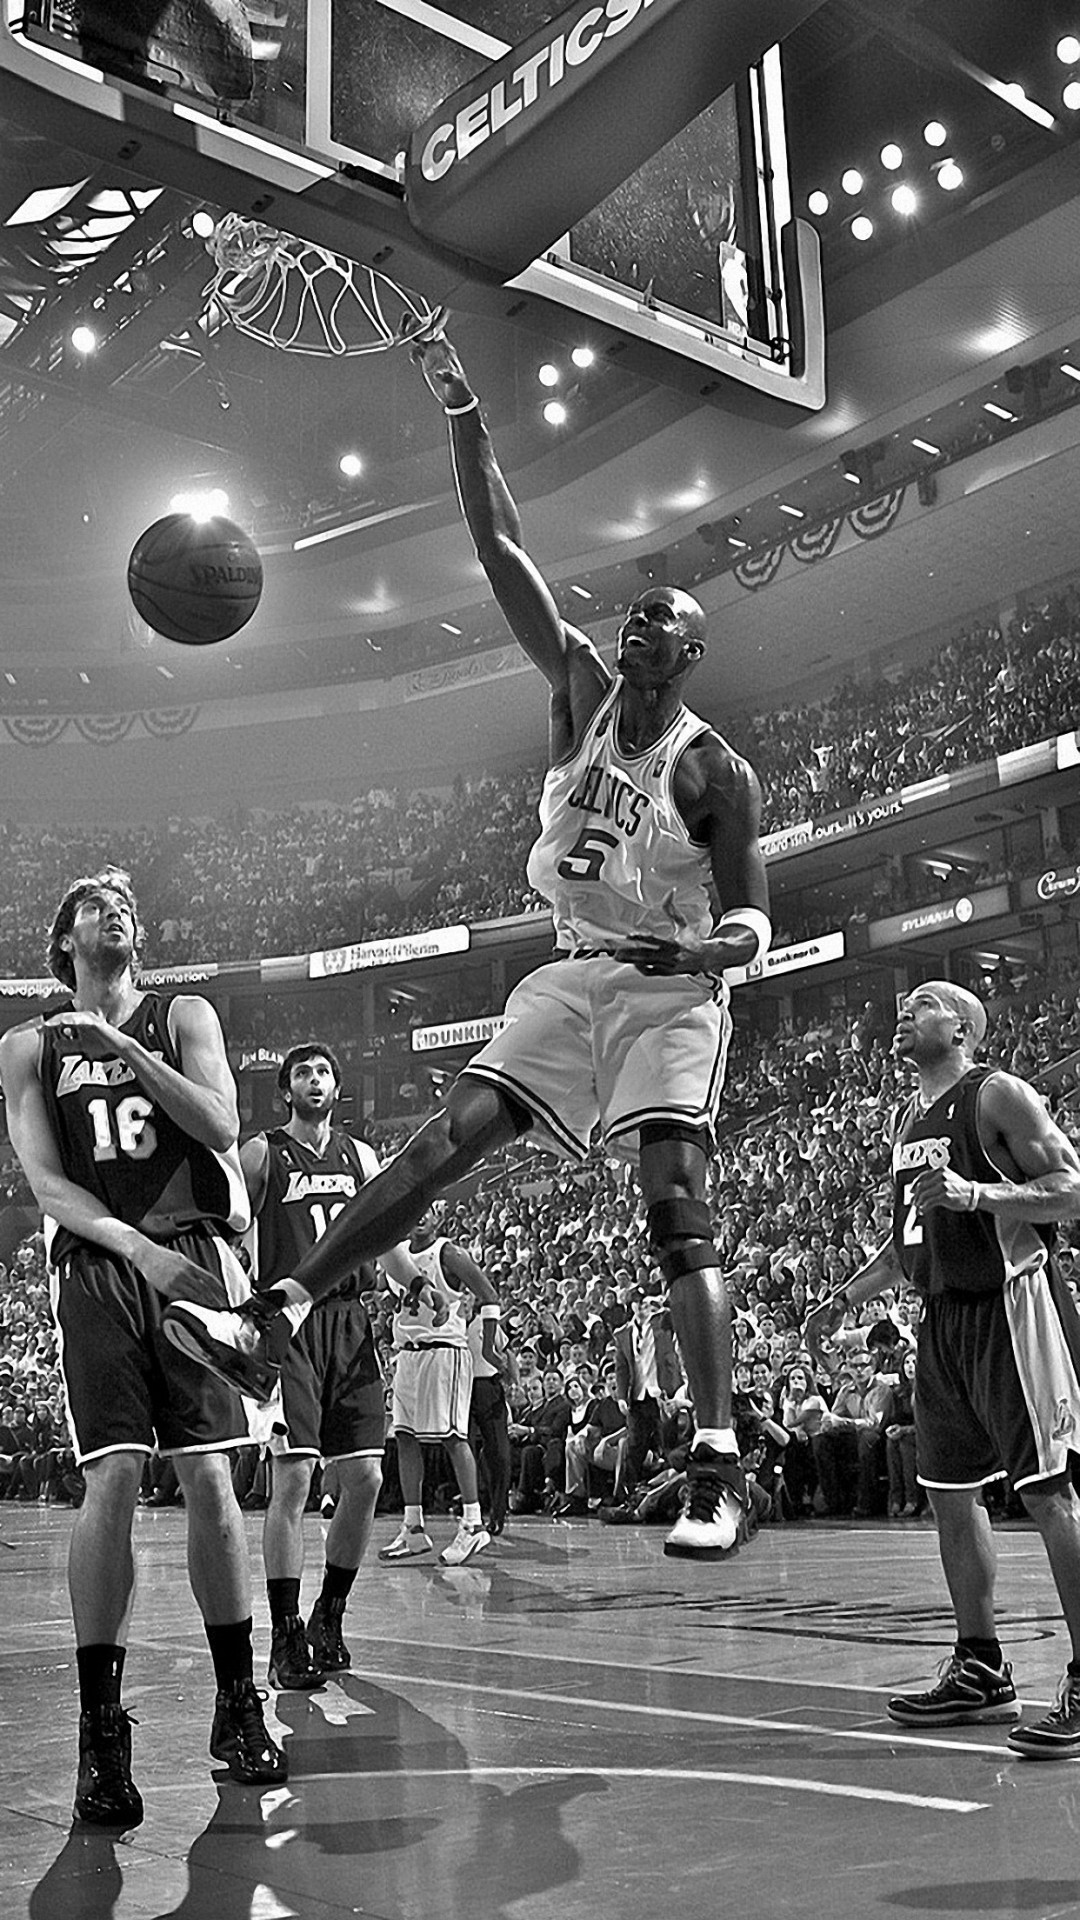 1080x1920 The 25+ best Basketball hd ideas on Pinterest | Basketball wallpaper hd,  NBA and Basket nba